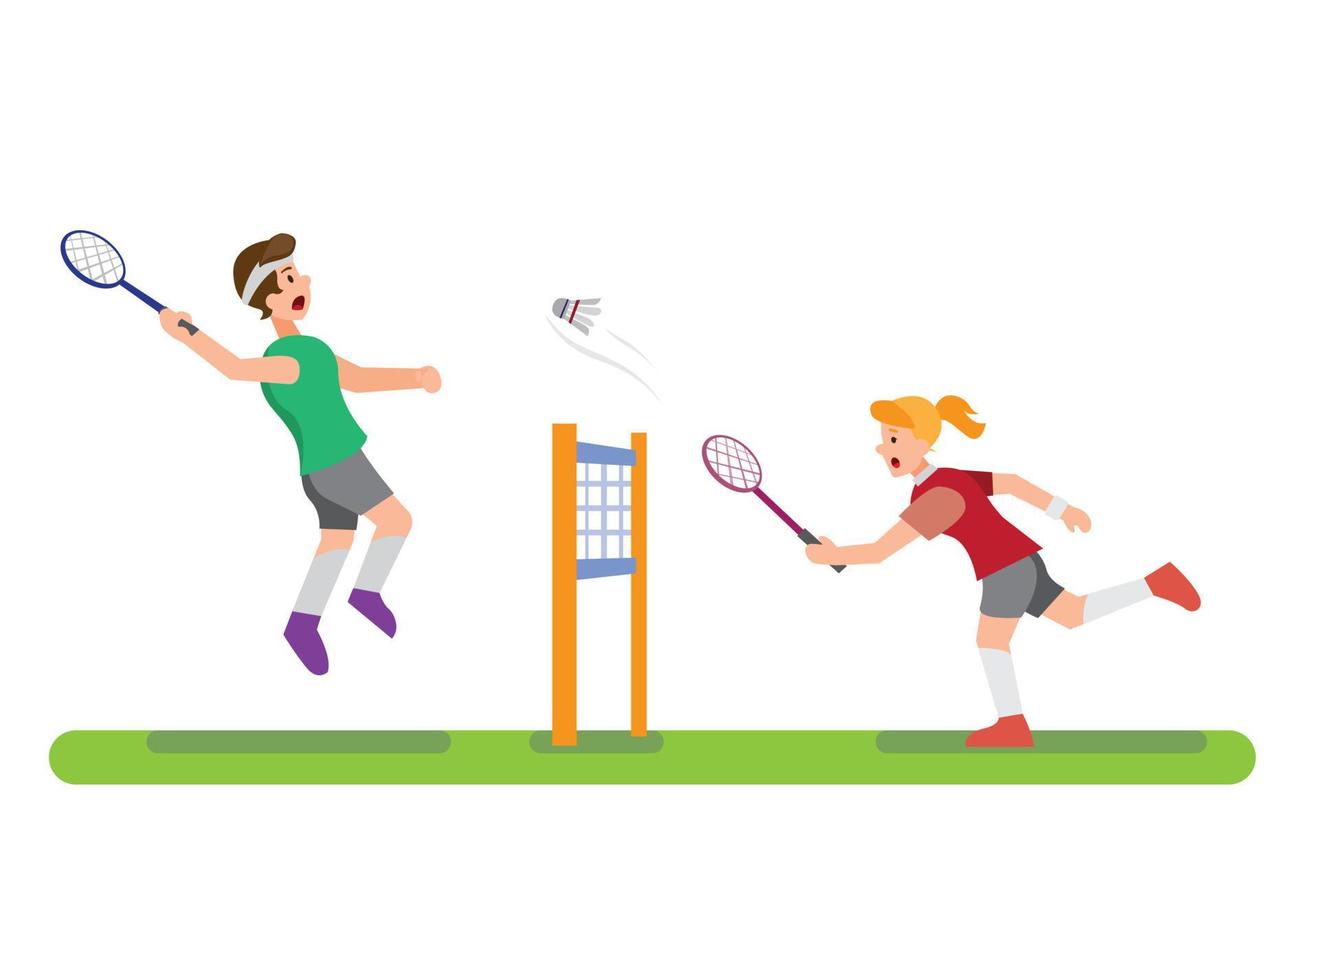 illustratie van mensen die badminton spelen met een vriend en klaar om shuttle te breken, sportcompetitie in cartoon platte bewerkbare vector